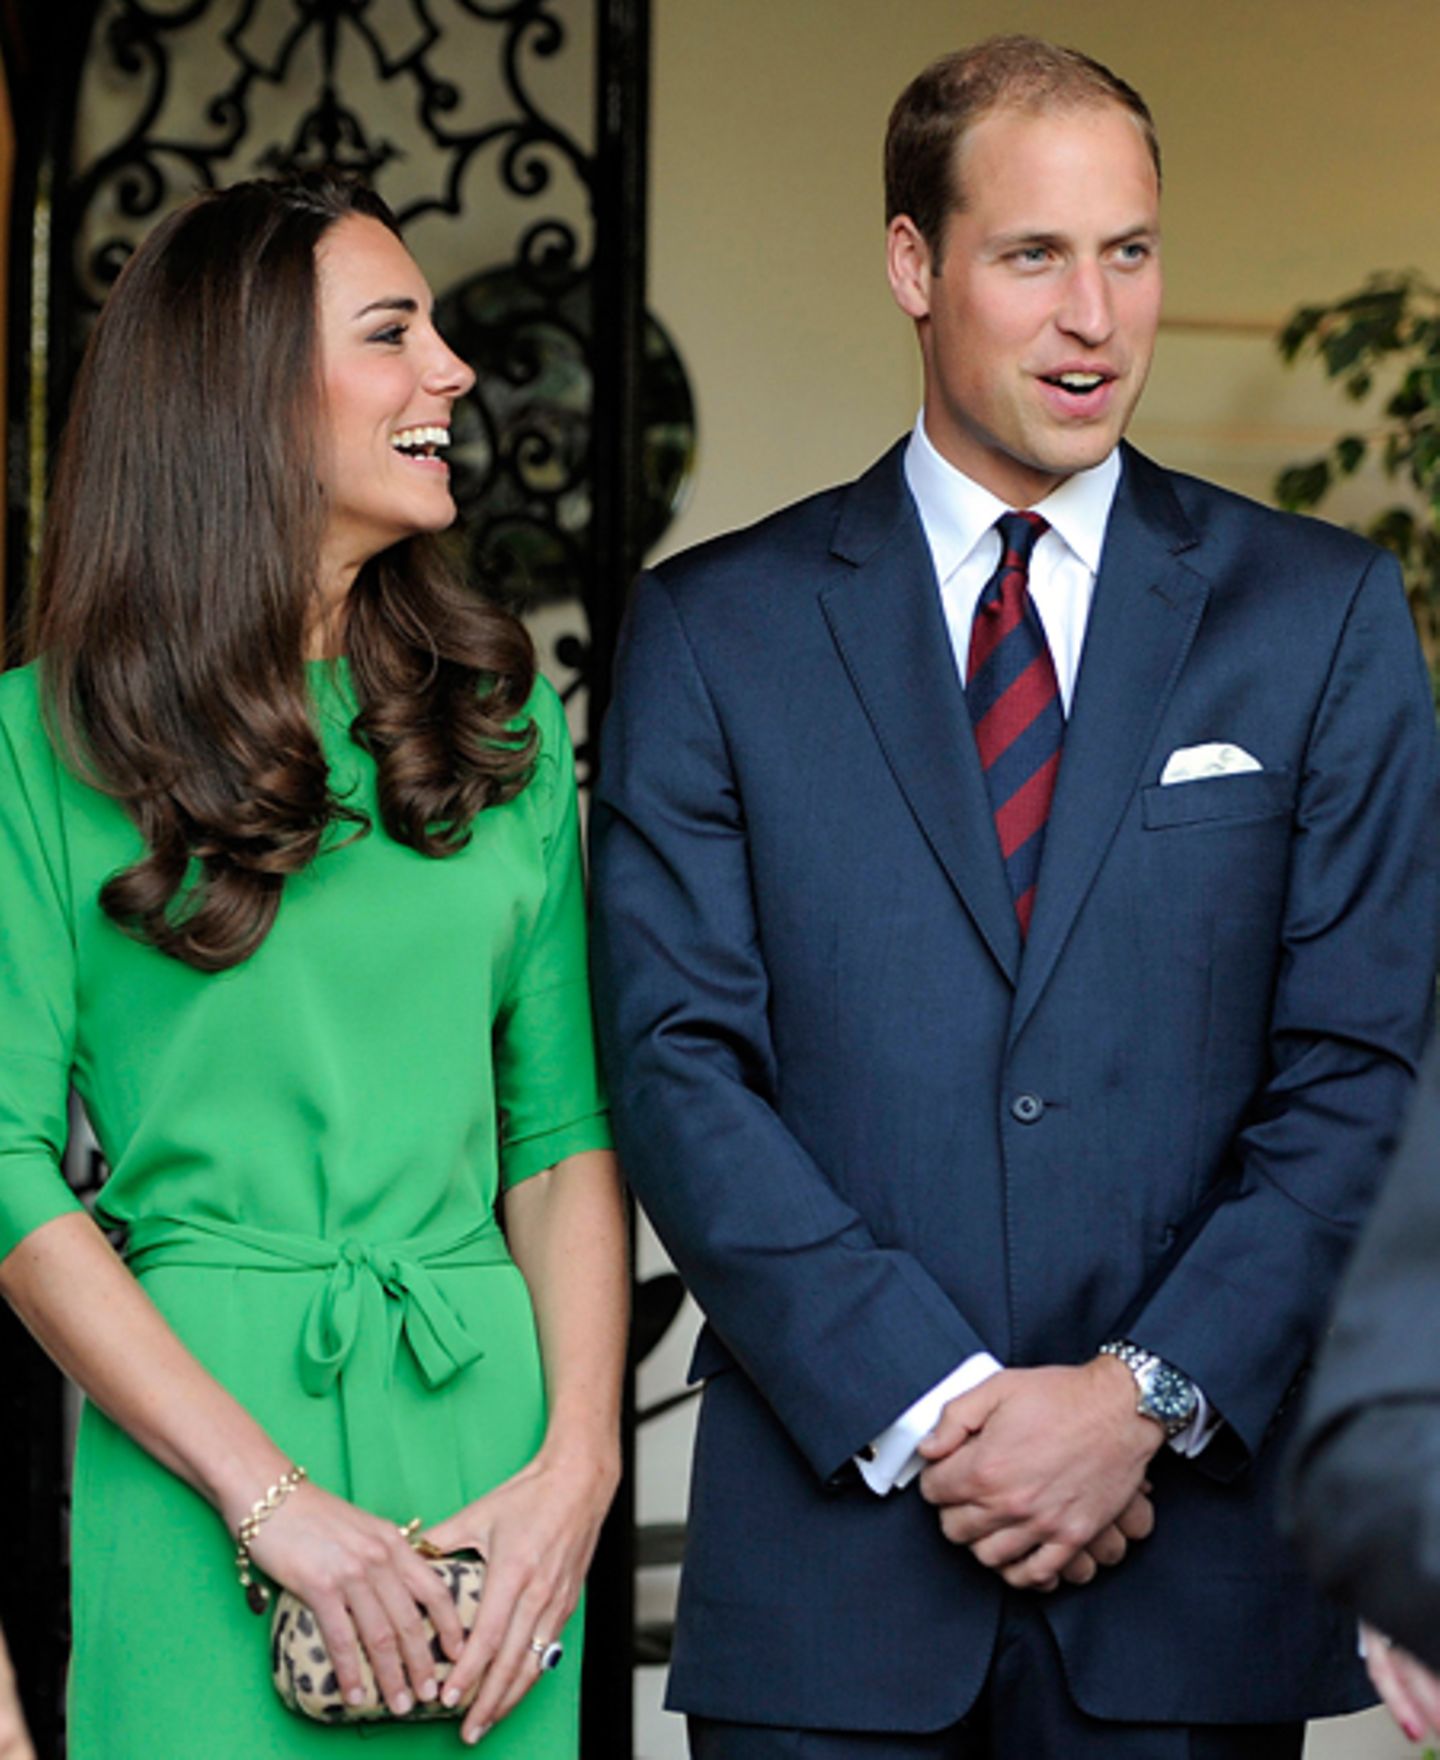 Staatsbesuch William und Kate: Für eine Feier im britischen Konsulat wechselte Kate auf ein grünes Kleid von "Diane von Furstenb